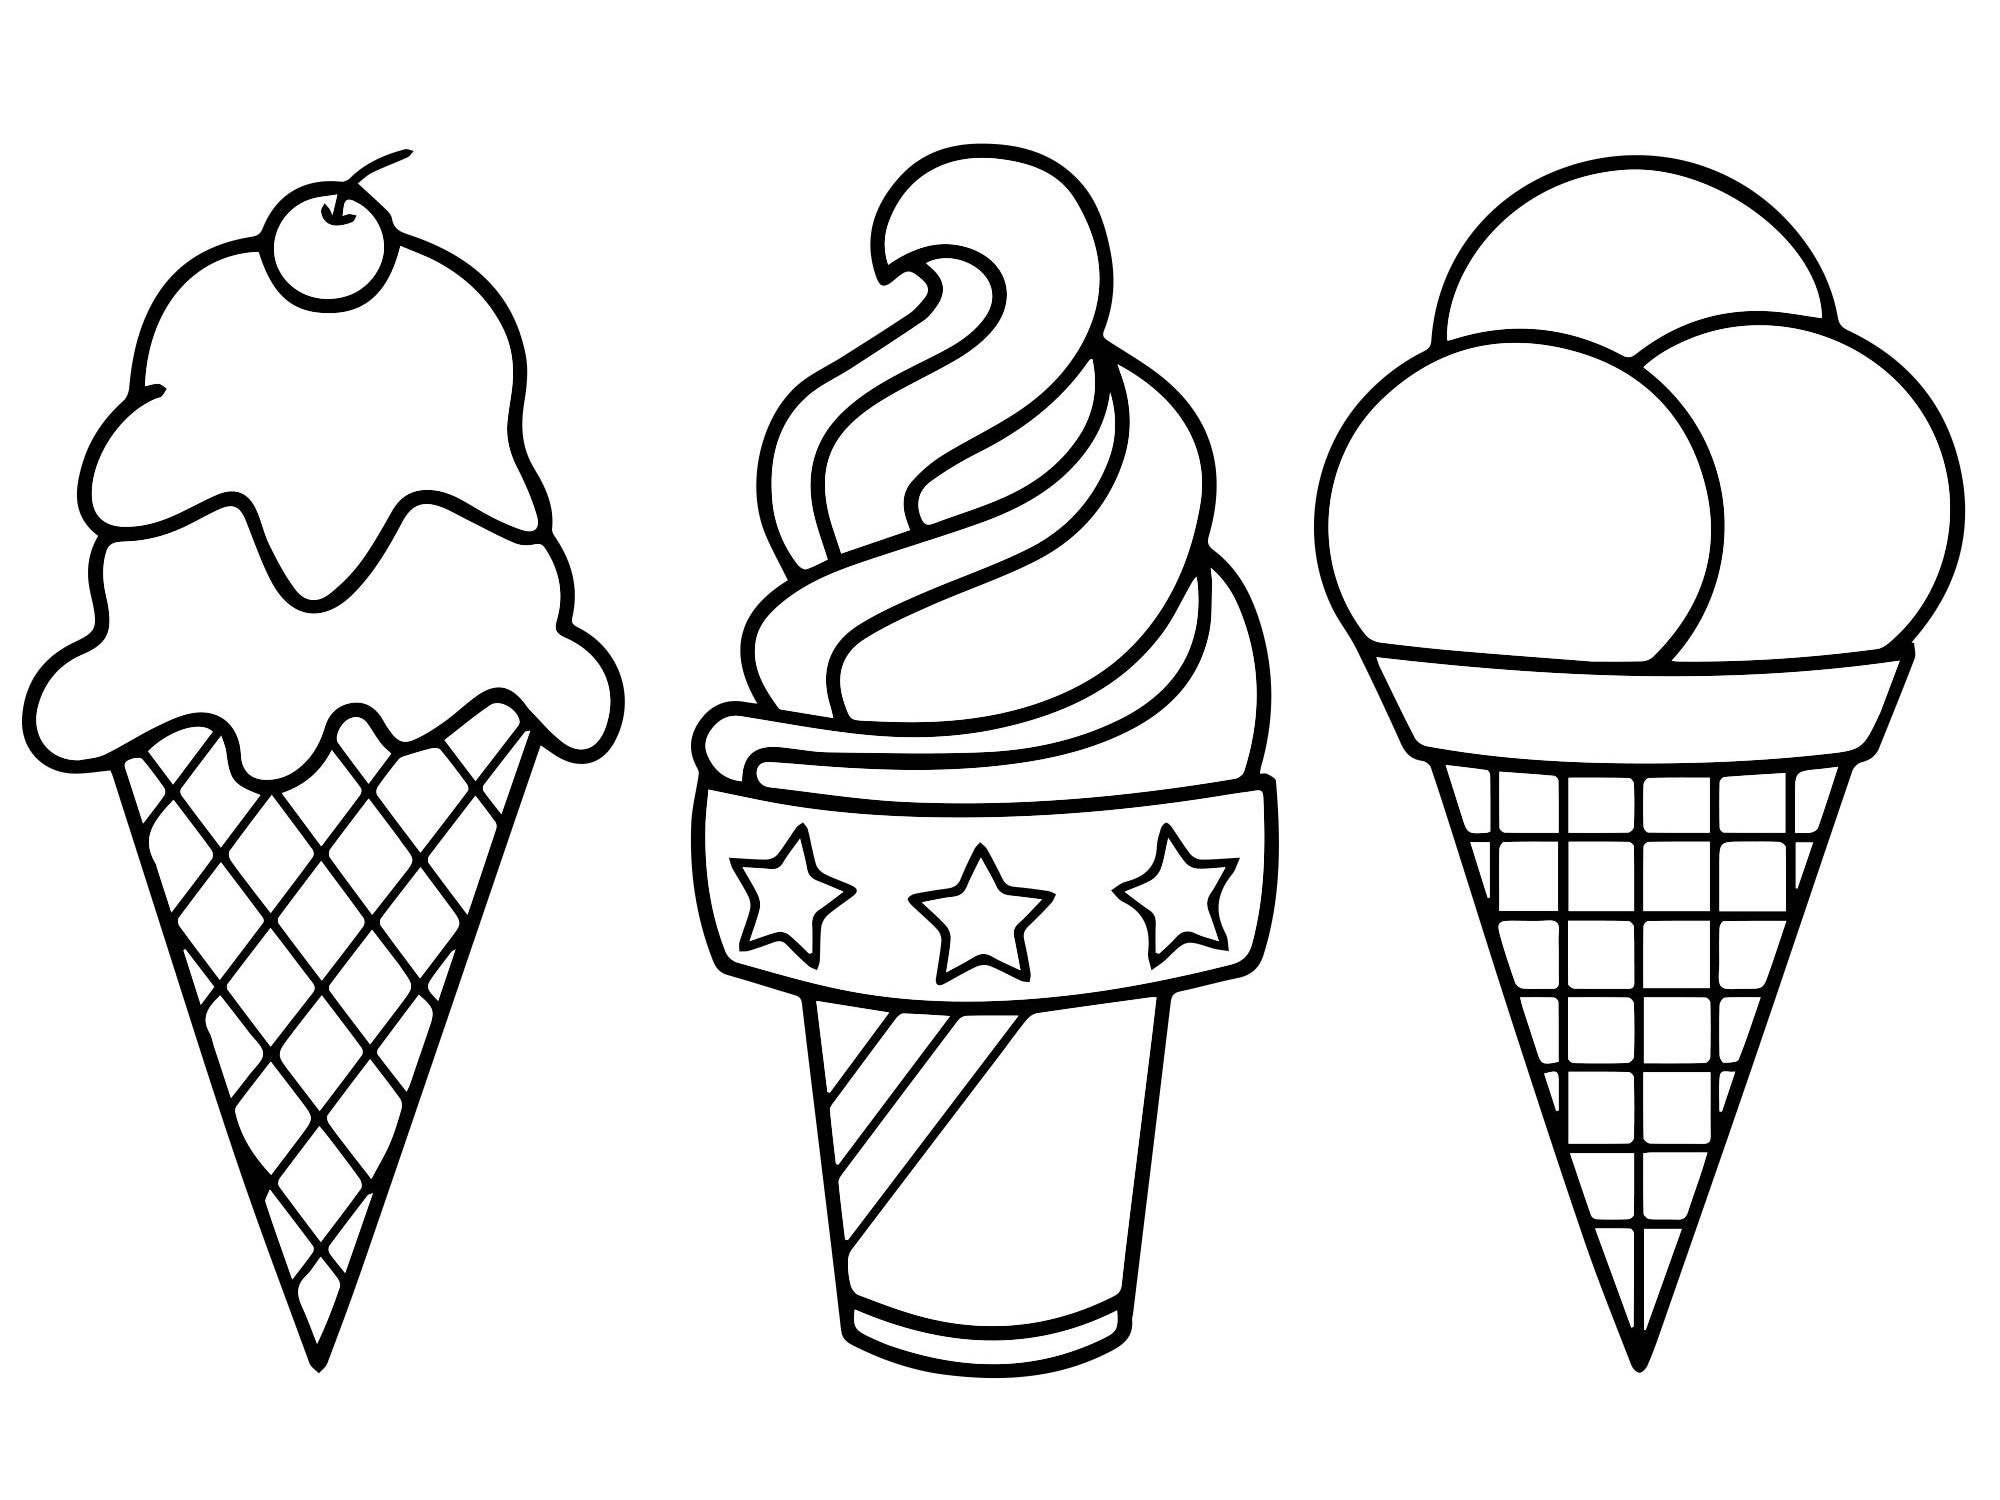 Изображения по запросу Раскраска мороженое - страница 2